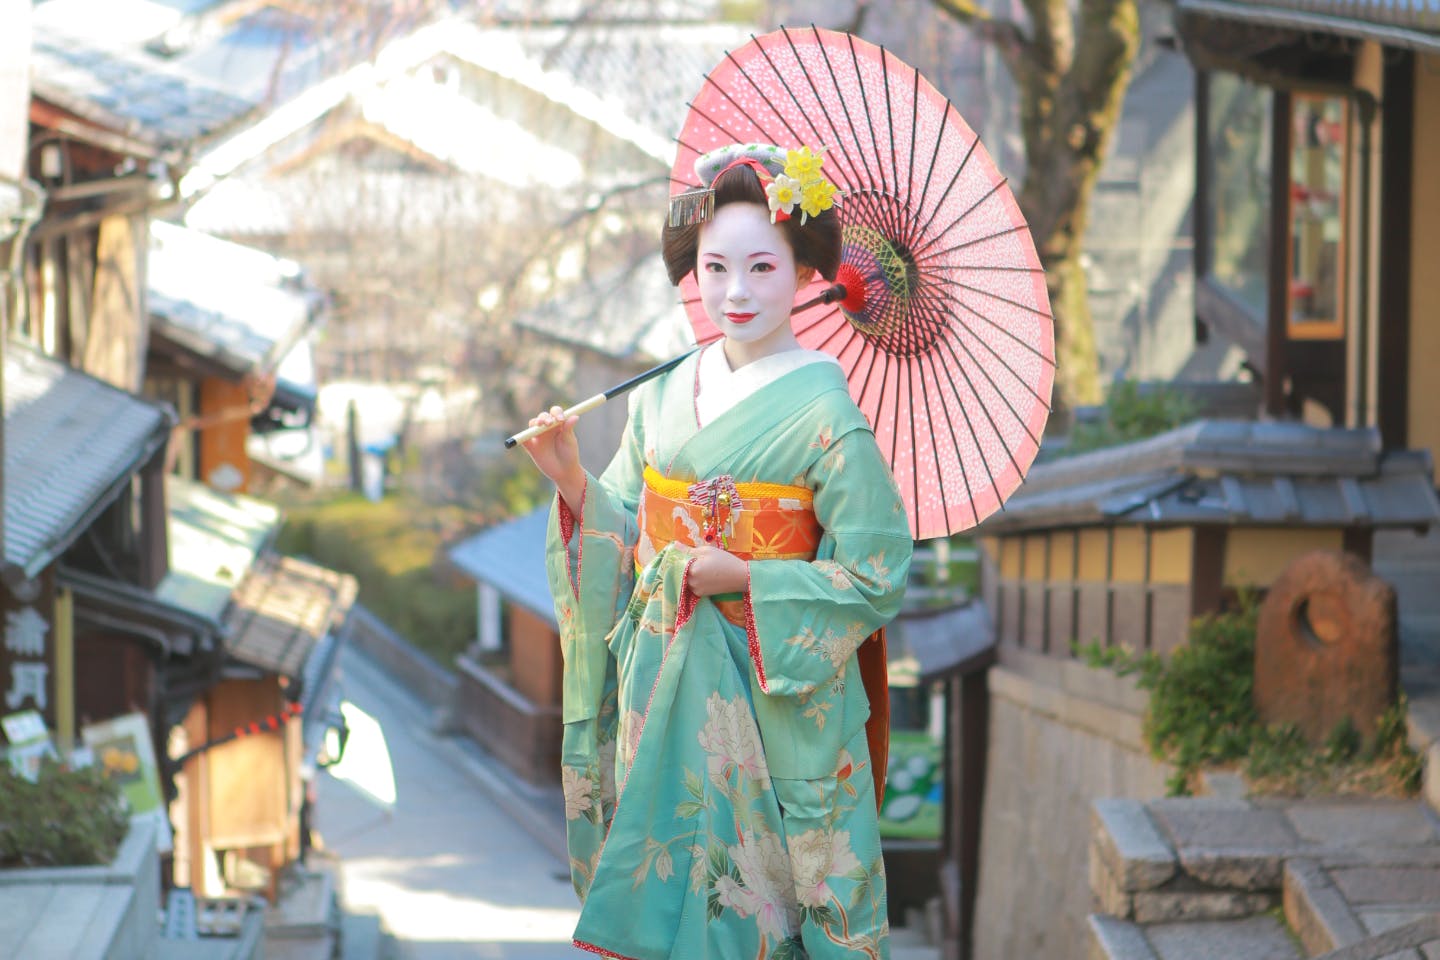 【散策プラン】いつもとは違う思い出を。舞妓姿で京都の街並みをゆったりと散策